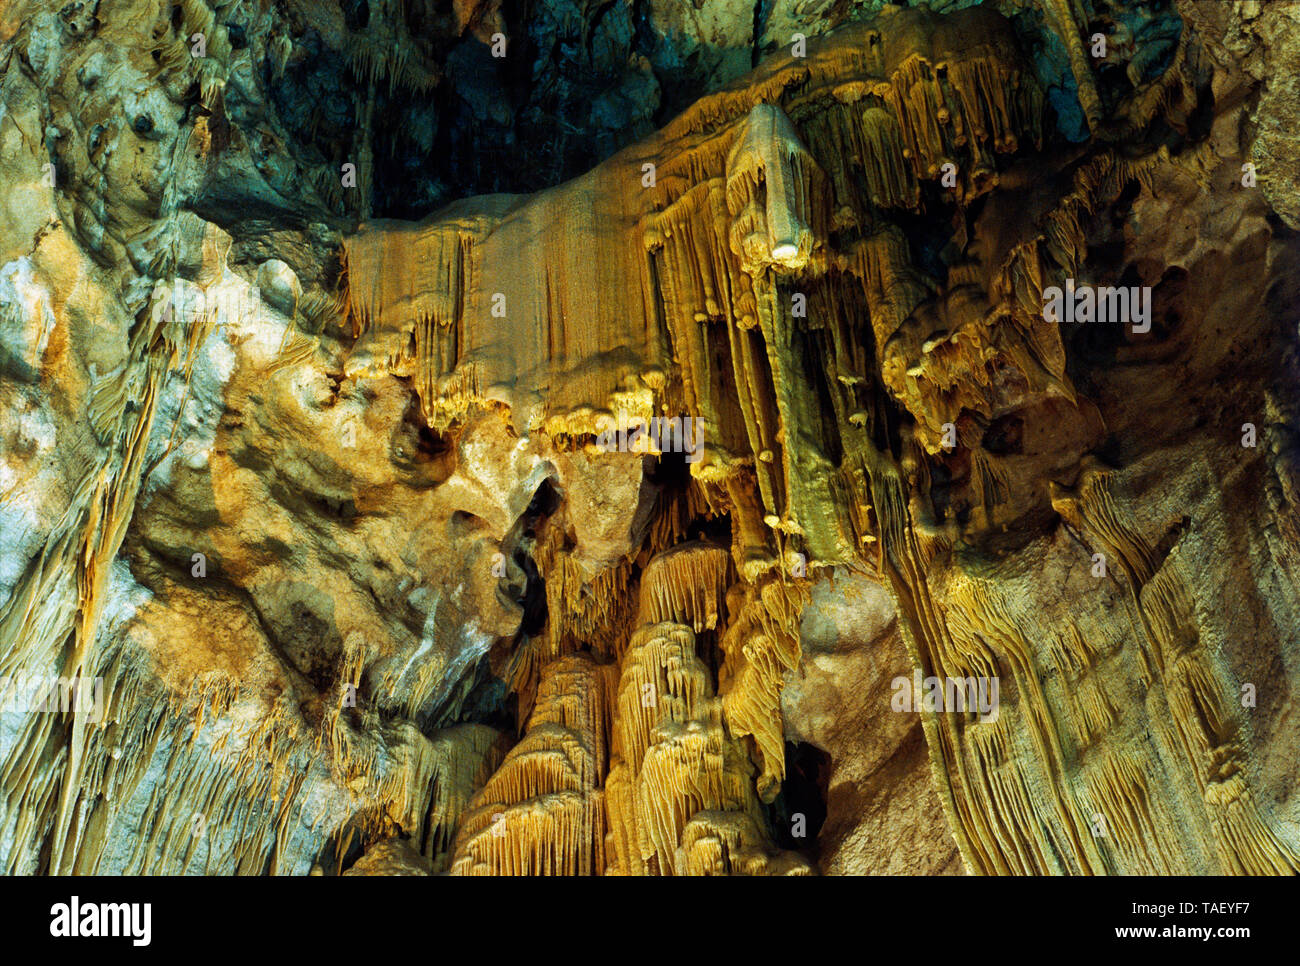 Grotten von Jeita Libanon Stockfoto